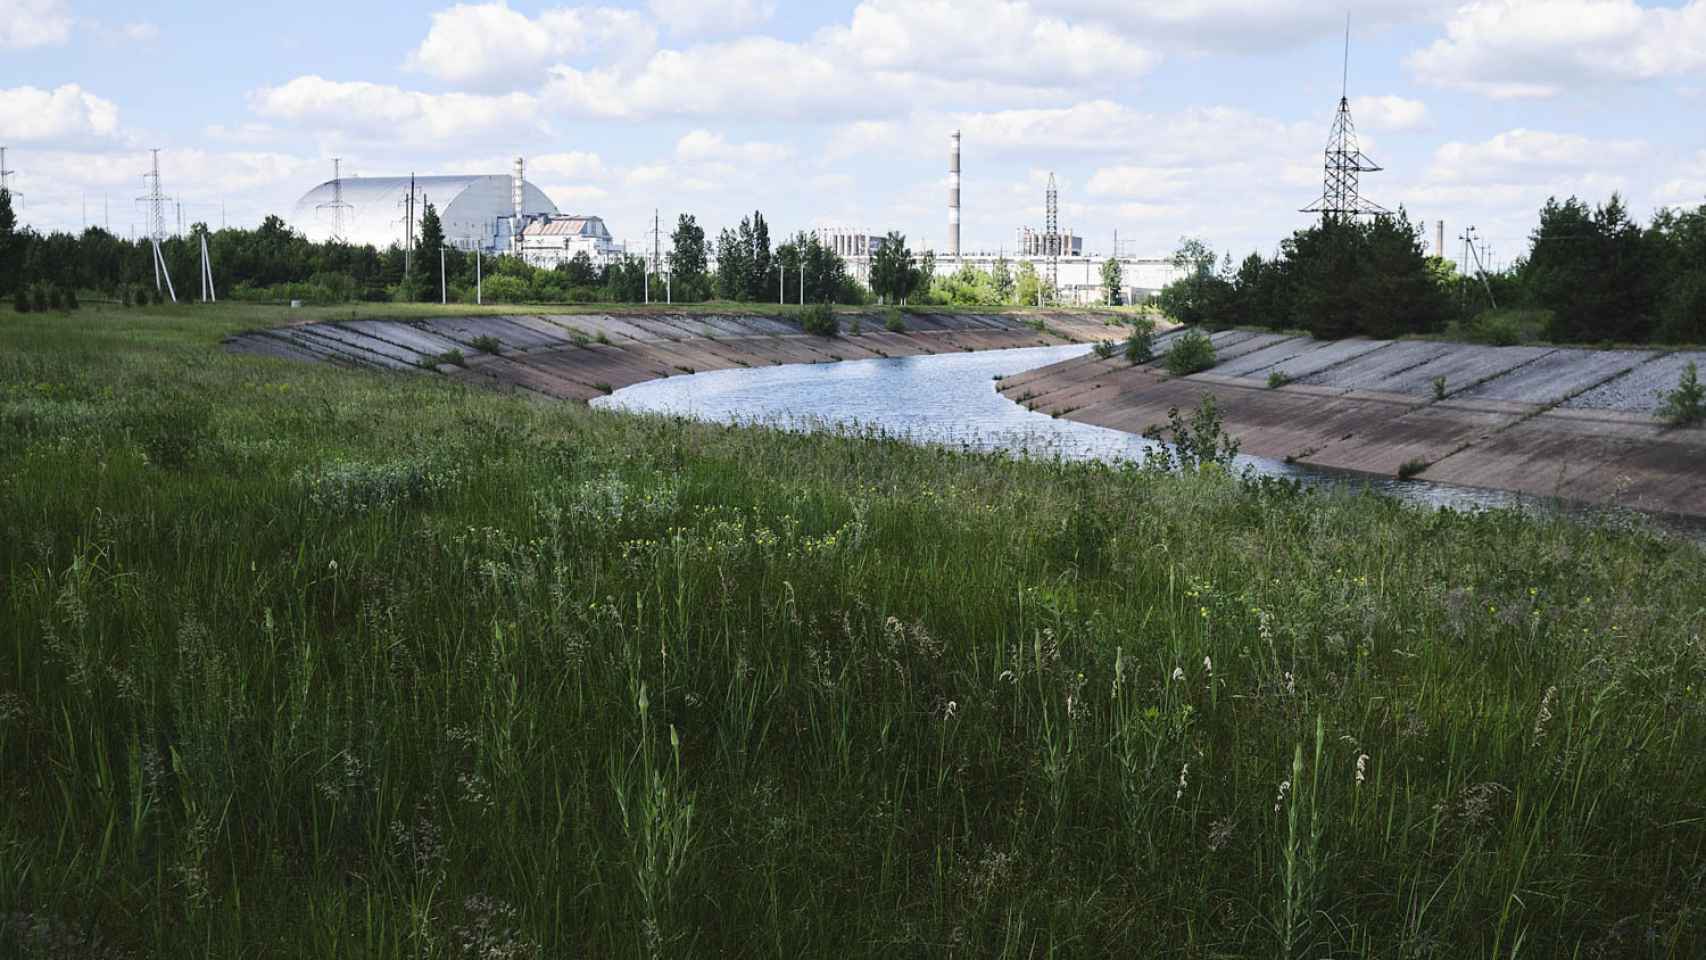 El sarcófago, al fondo, que encierra el accidentado reactor 4 de Chernóbil, junto al canal de refrigeración de la central nuclear, que sigue en activo.